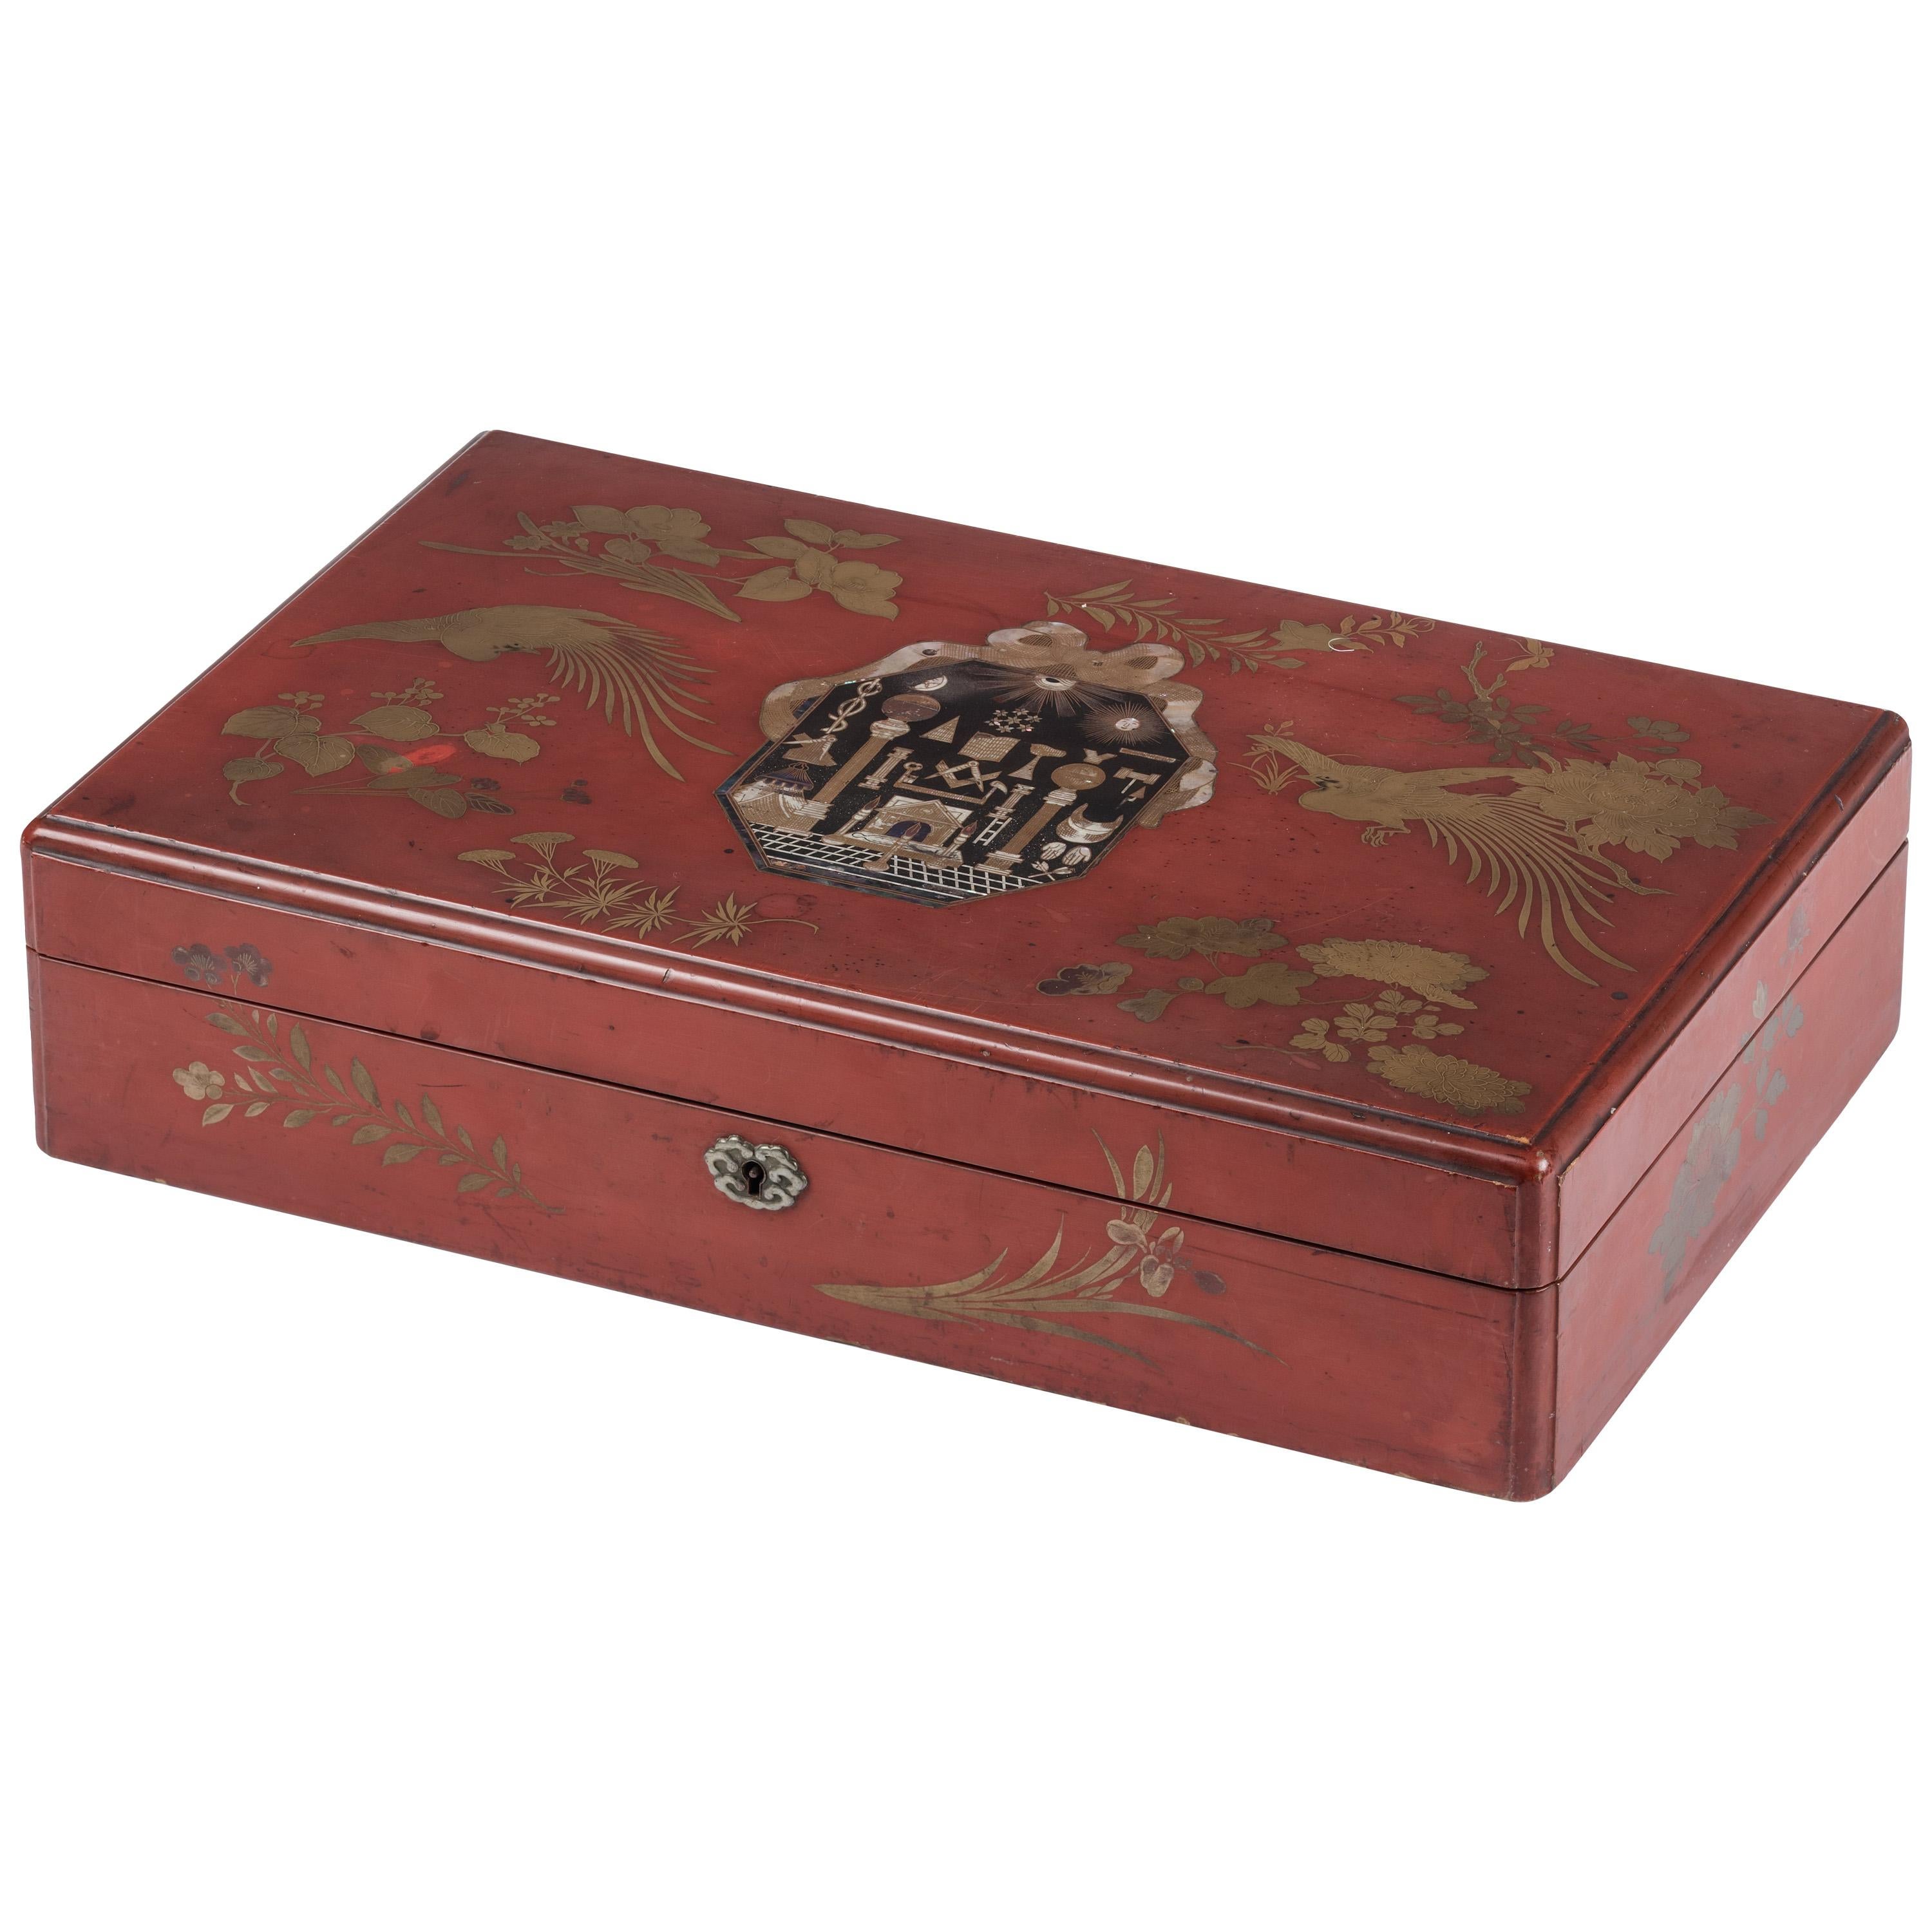 Boîte en laque rouge d'exportation japonaise avec symboles maçonniques, vers 1800